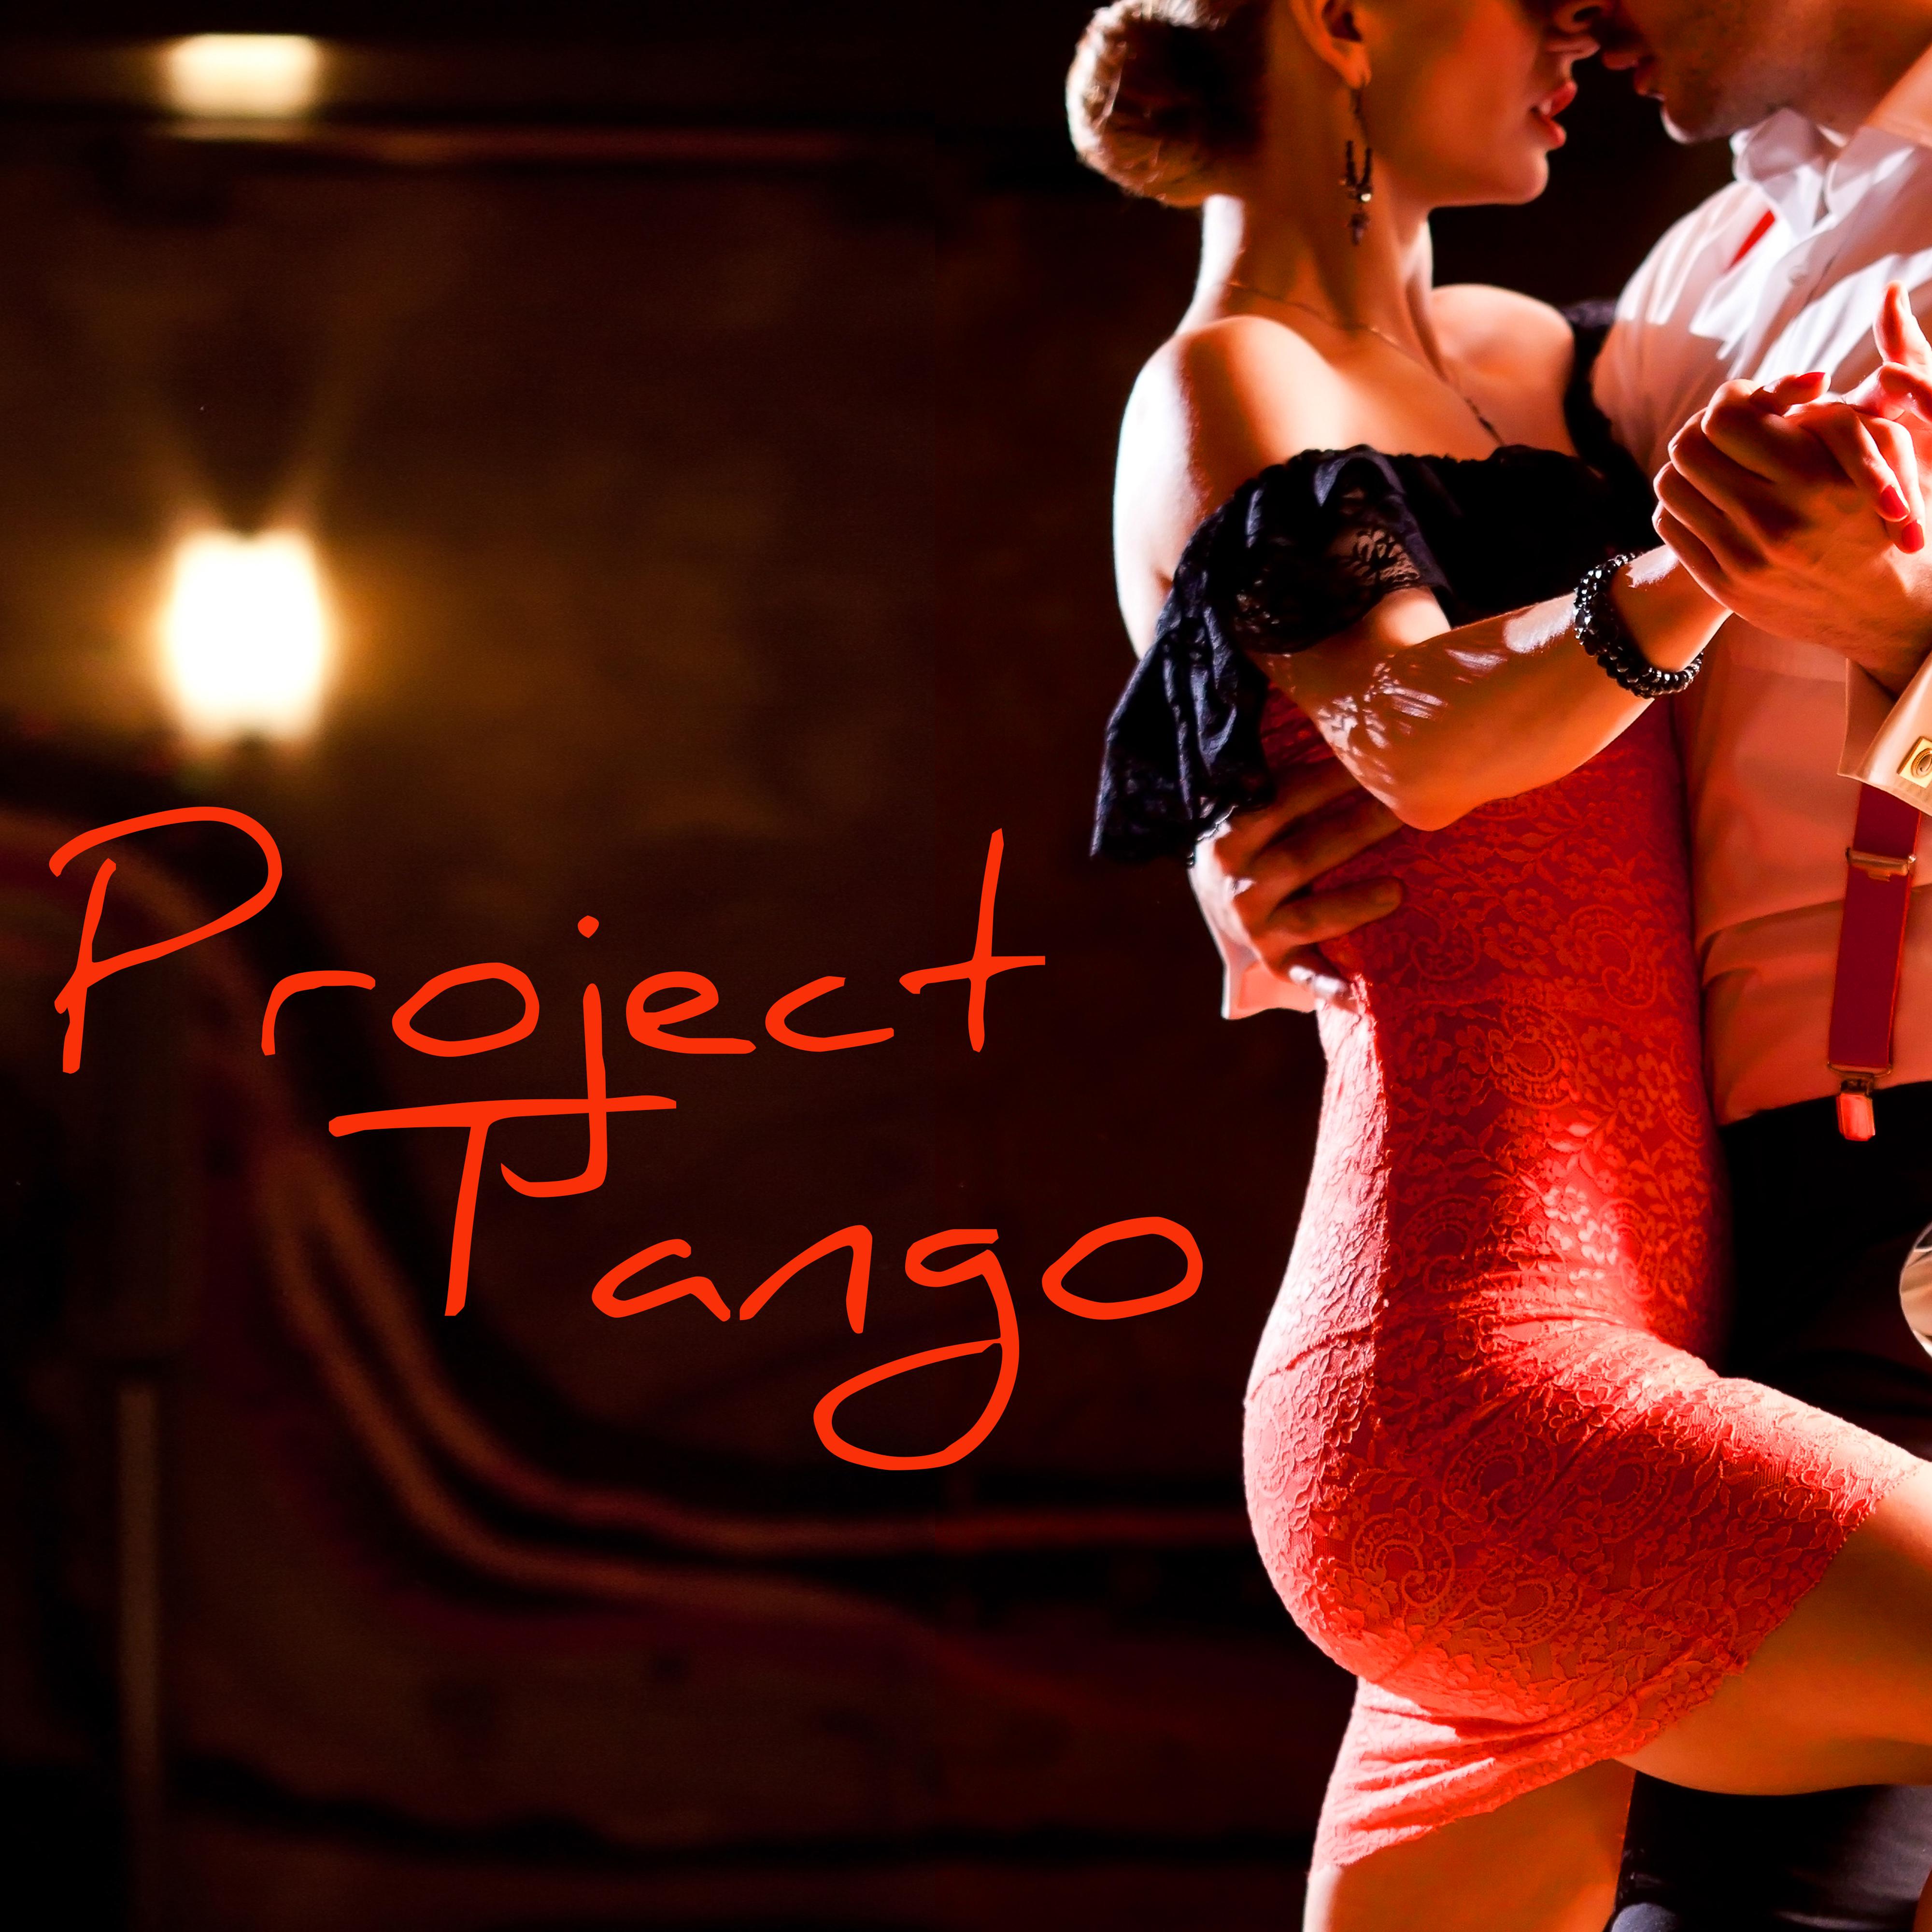 Tango egypt neengmail